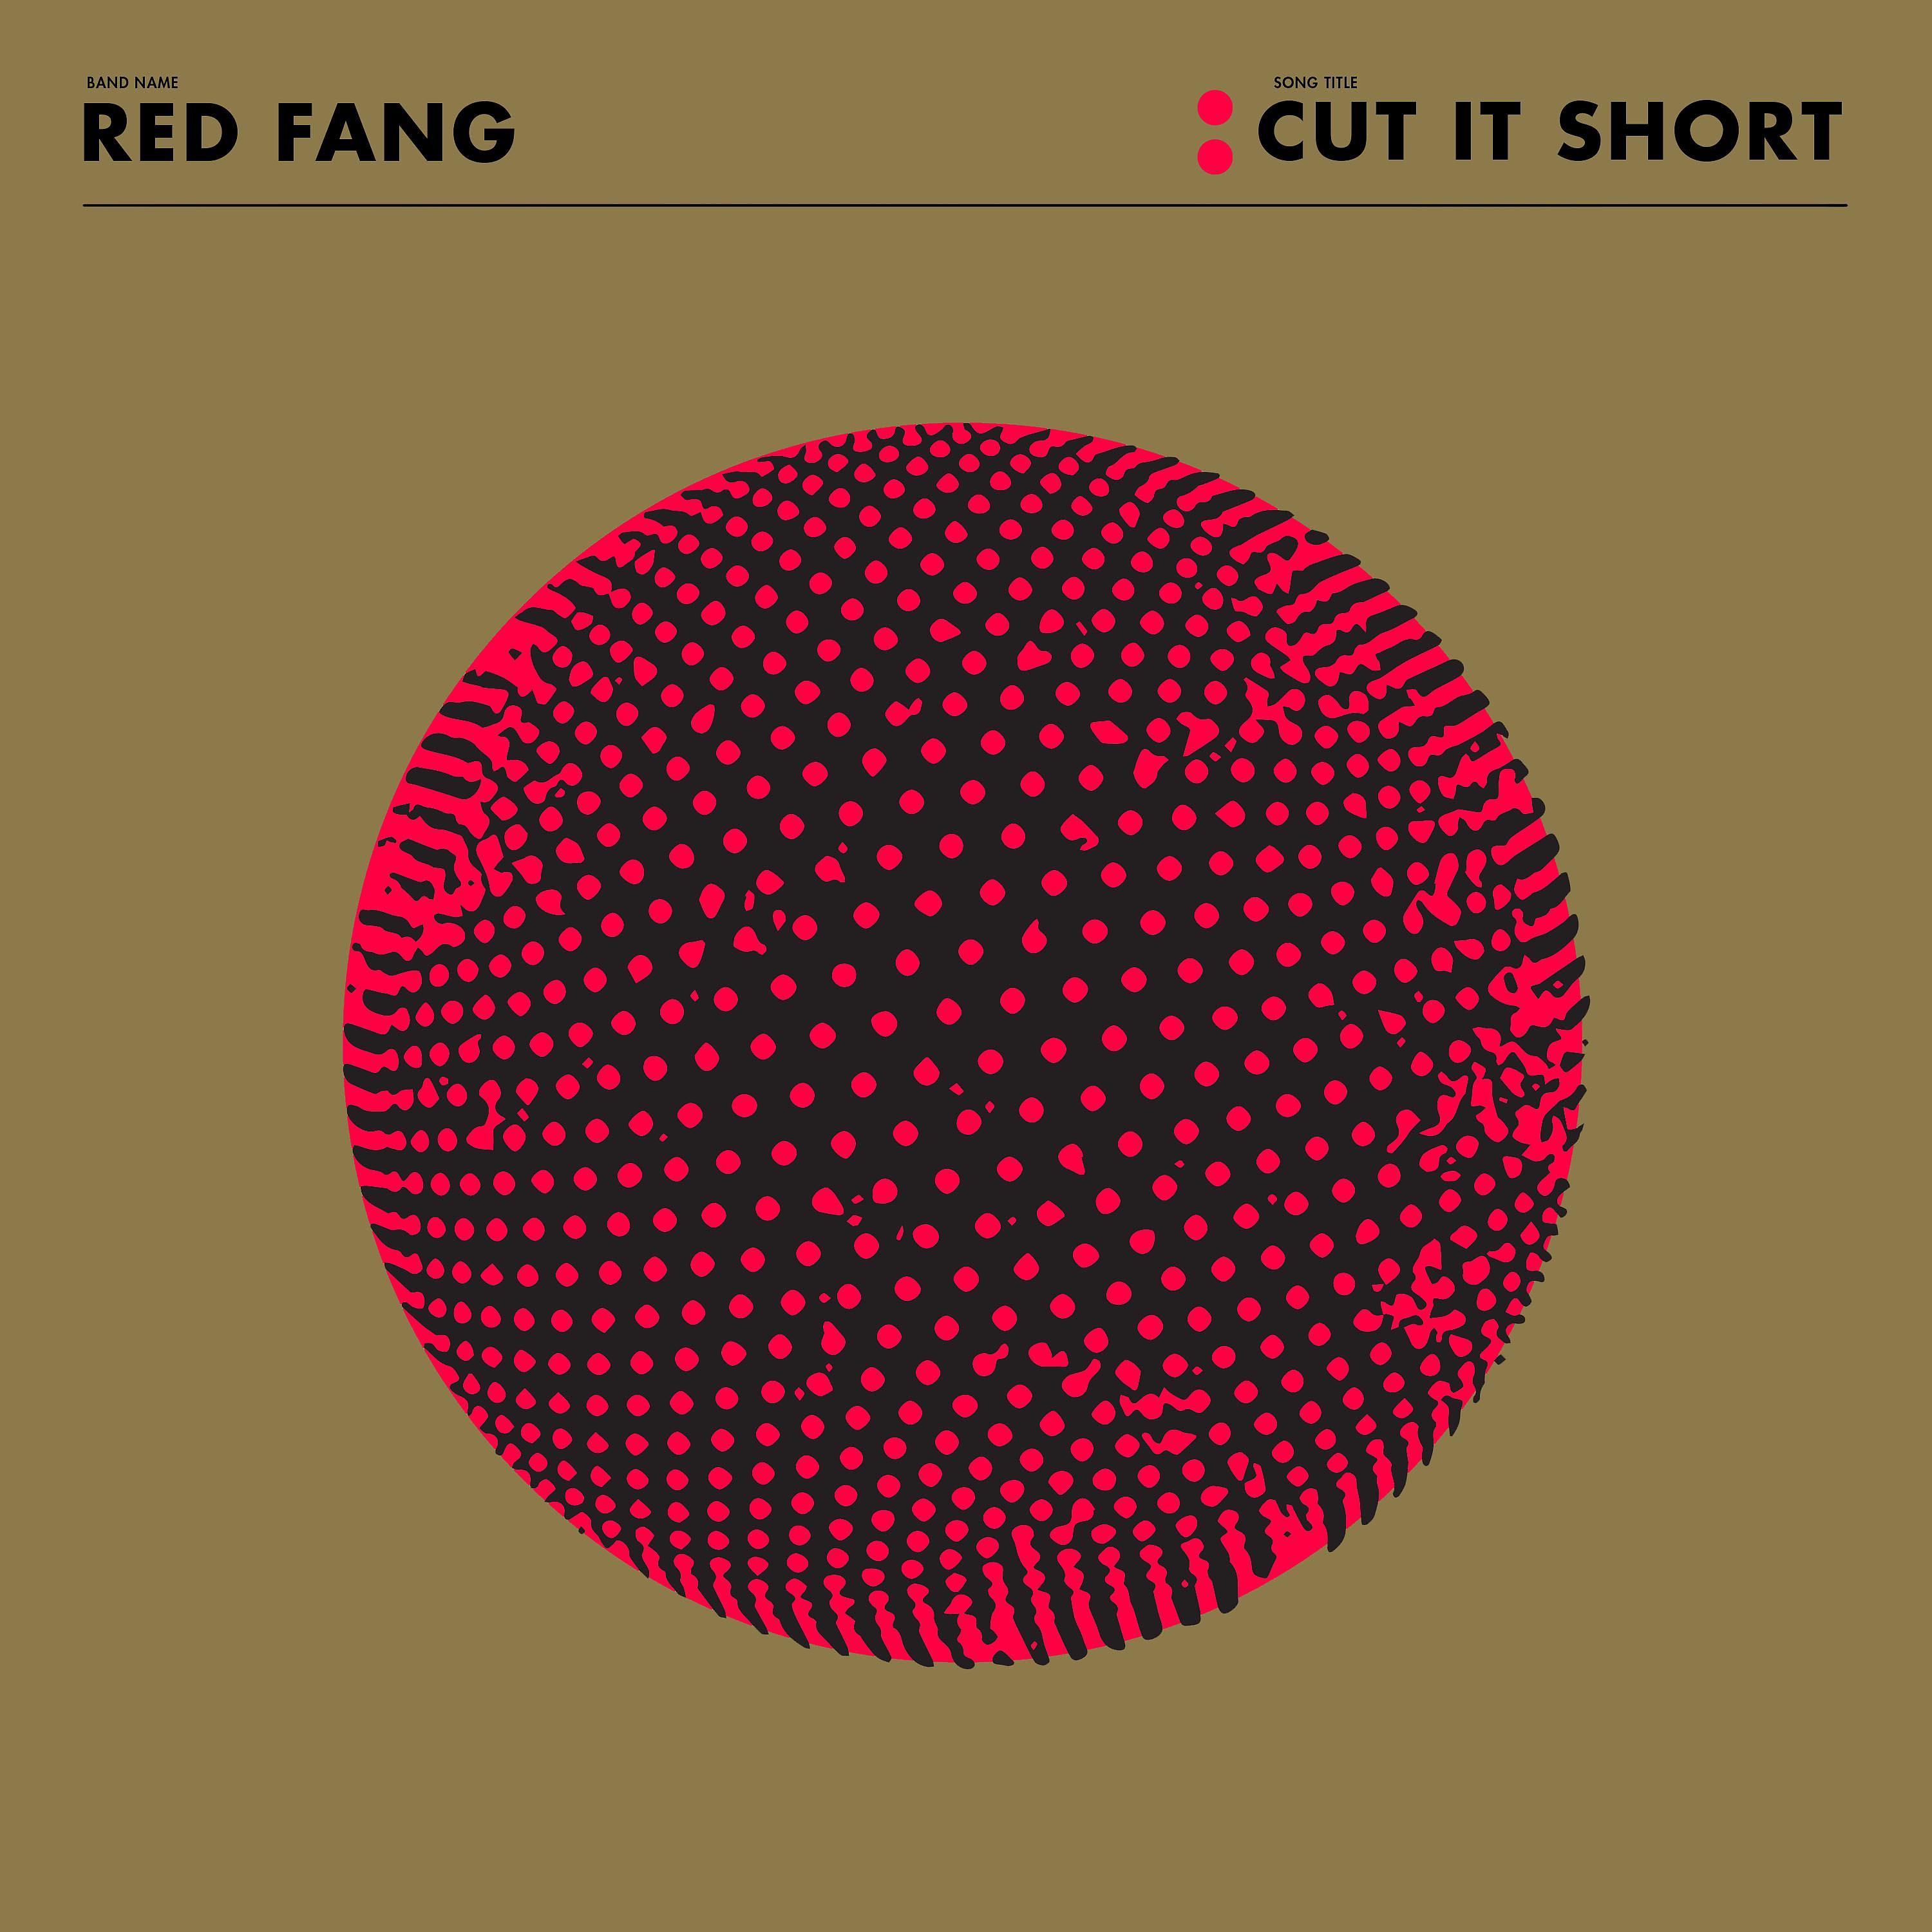 Singles short. Red Fang. Red Fang - Red Fang. Red Fang Band.